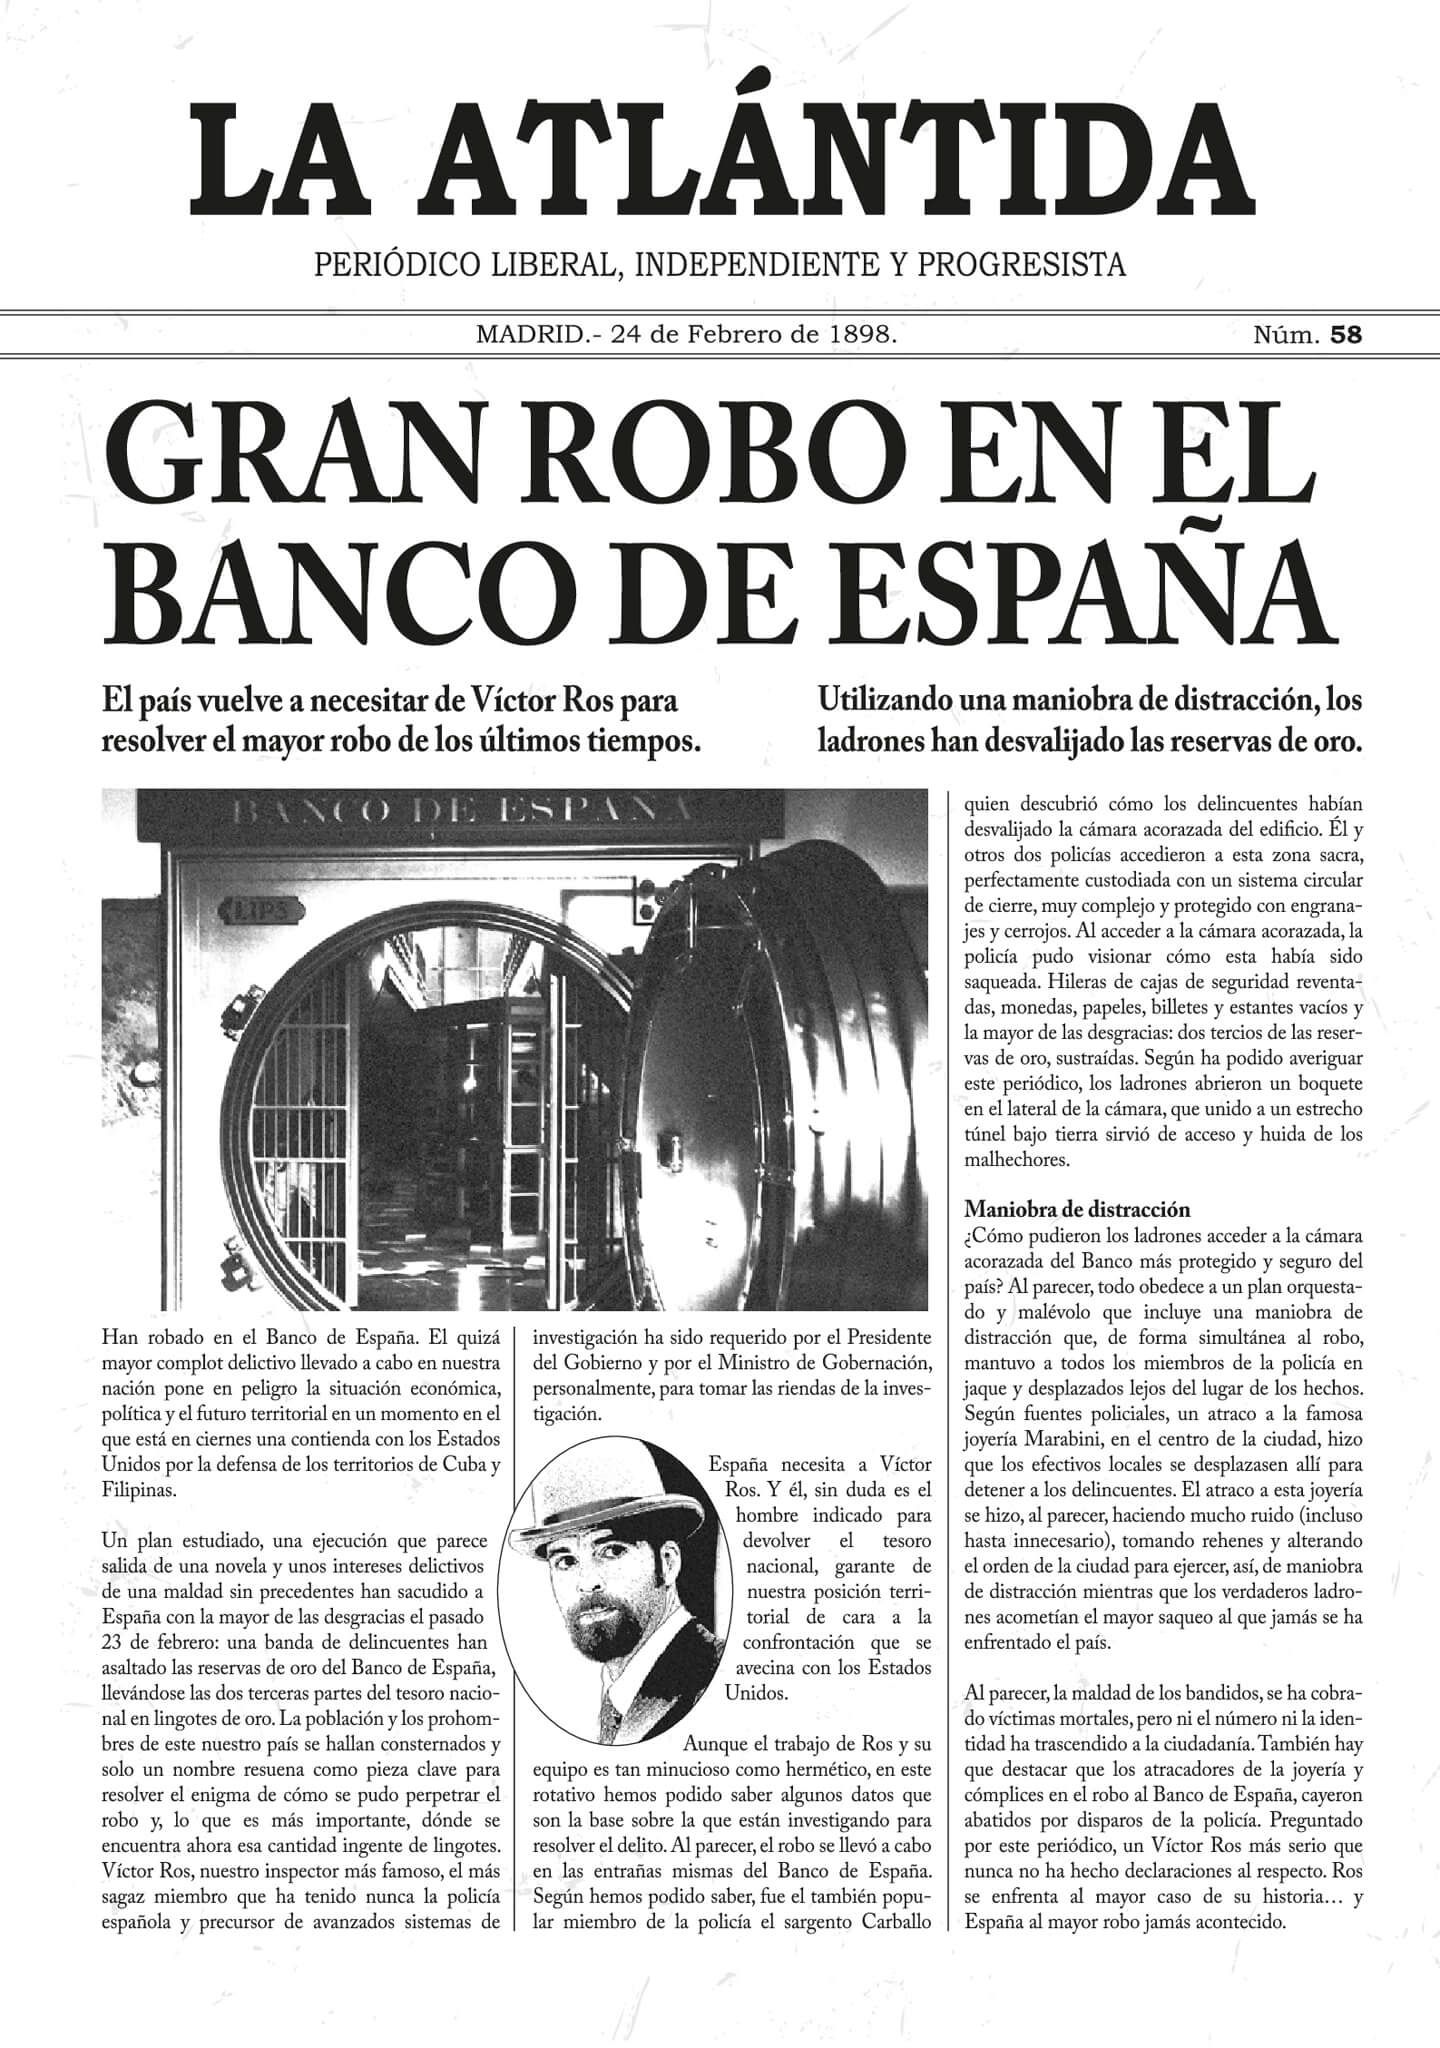 ¡Extra, extra! Gran robo en el Banco de España